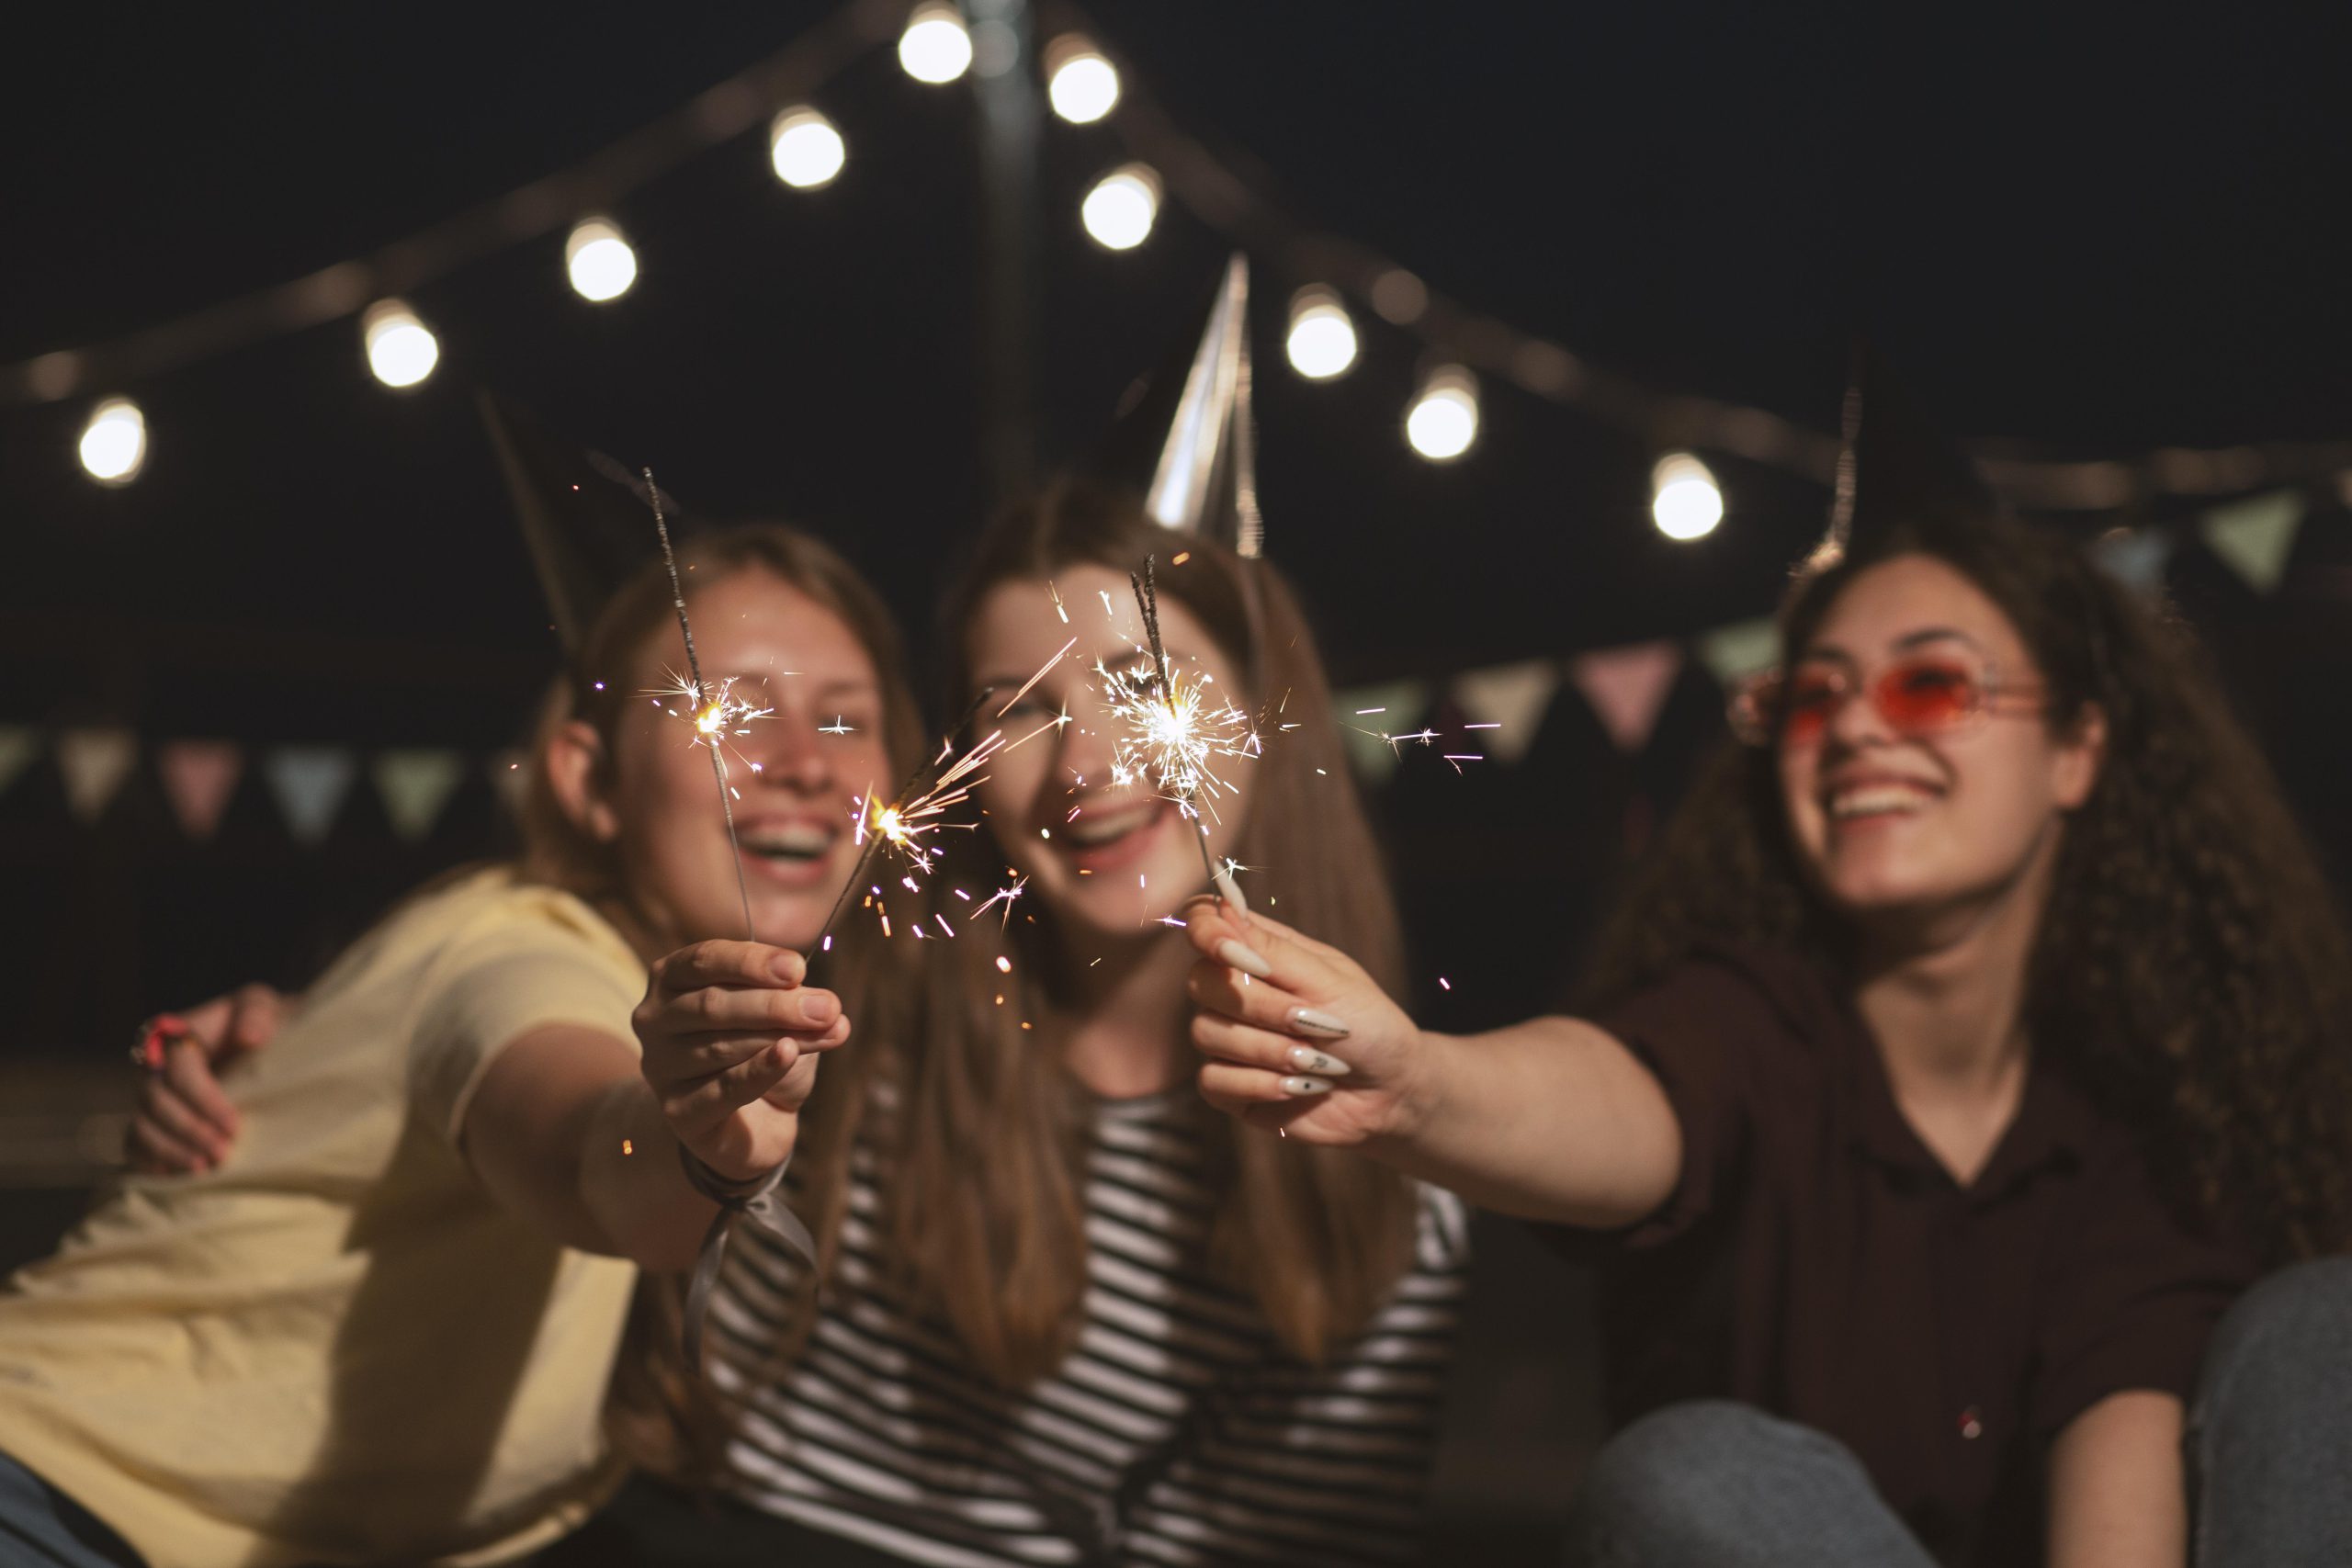 Três garotas comemoram o ano novo com velas. Ao fundo está de noite com algumas lâmpadas dispostas em um varal e iluminando o local.